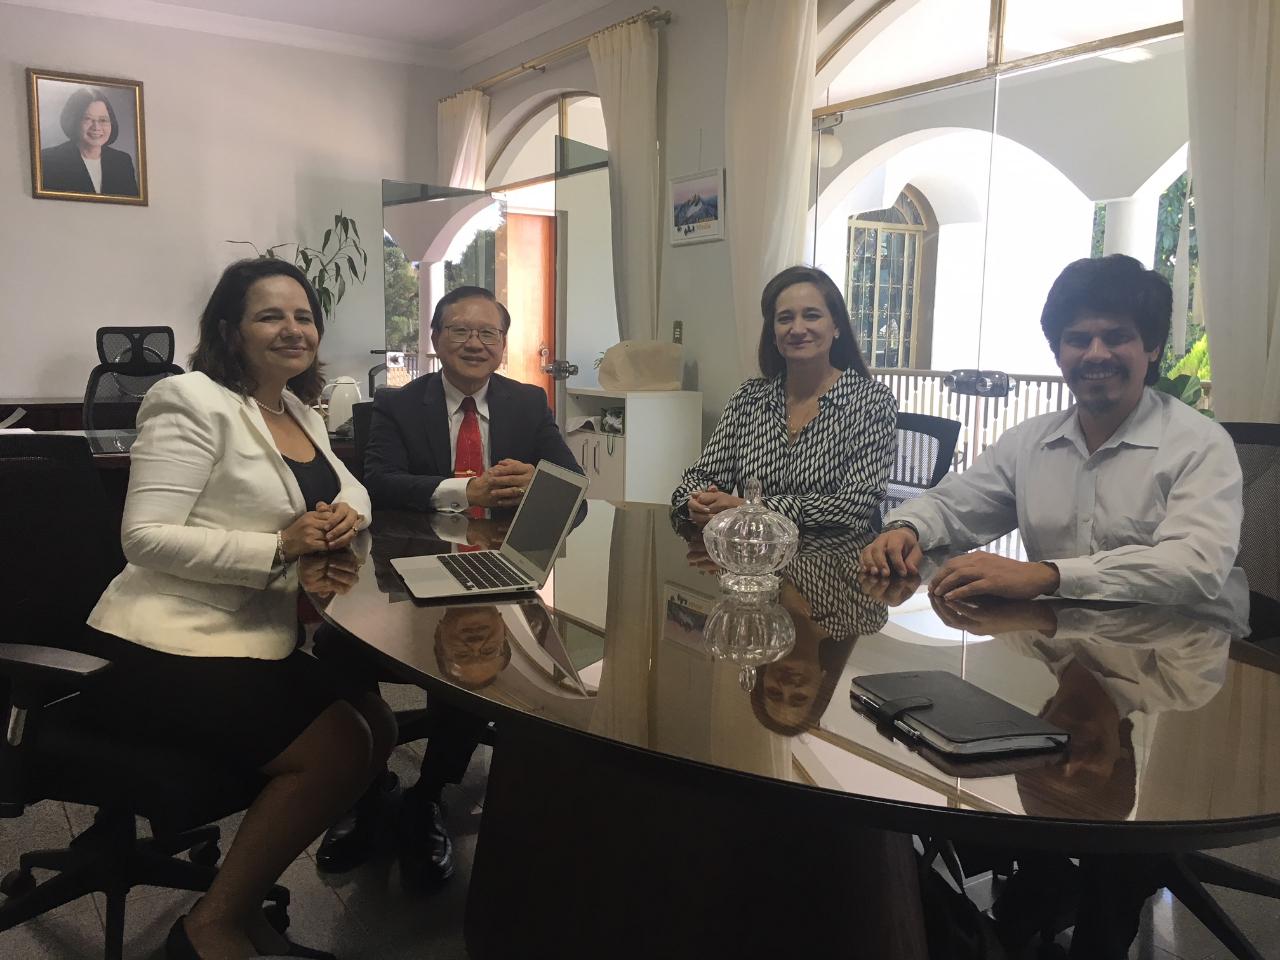 Os professores Dra. Soraya, Dra Deborah e Dr. Jaime do Estado da Bahia, fizeram uma visita ao Senhor Embaixador Tsai em 20 de junho, que trocaram pontos de vista sobre intercâmbios acadêmicos entre Taiwan e o Brasil, nomeadamente a Bahia.